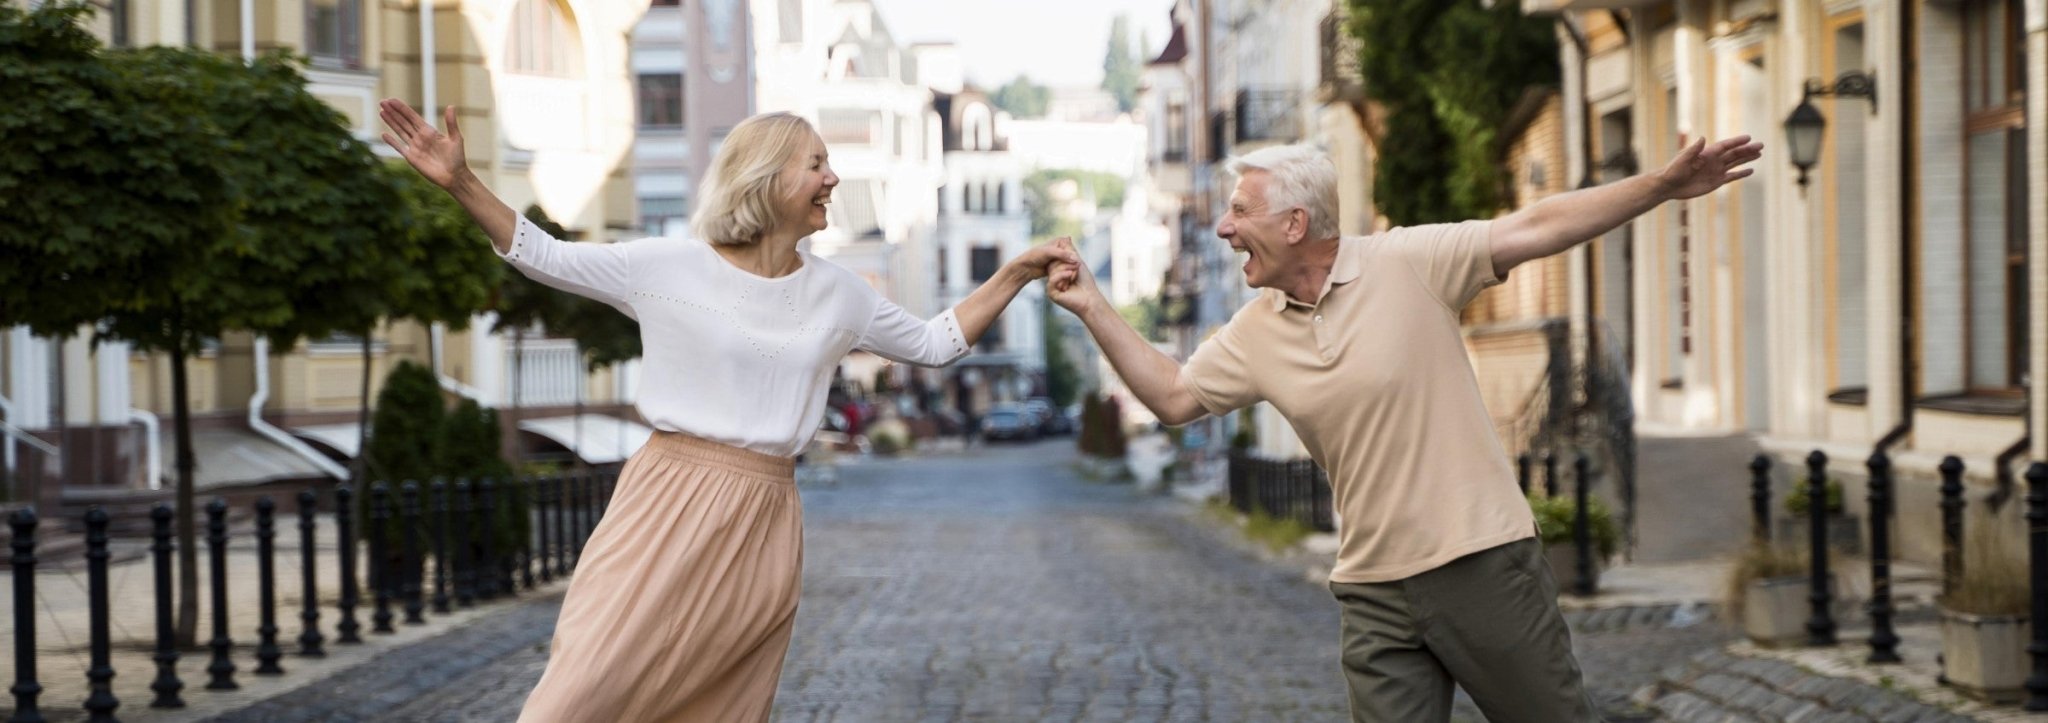 Masážní křeslo pro fyzickou relaxaci v důchodovém | Masážní křeslo World